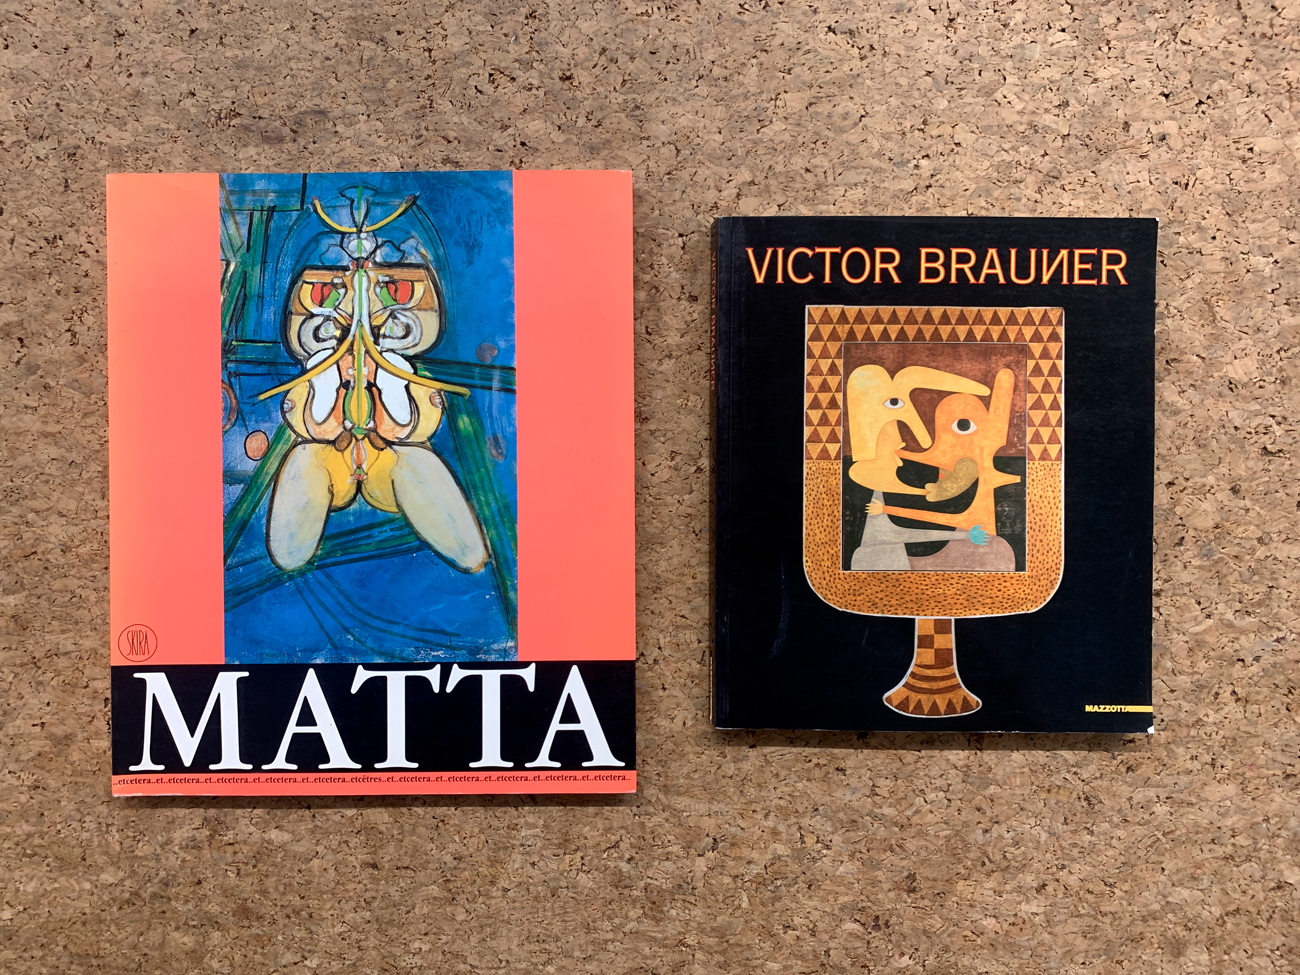 SEBASTIAN MATTA E VICTOR BRAUNER - Lotto unico di 2 cataloghi